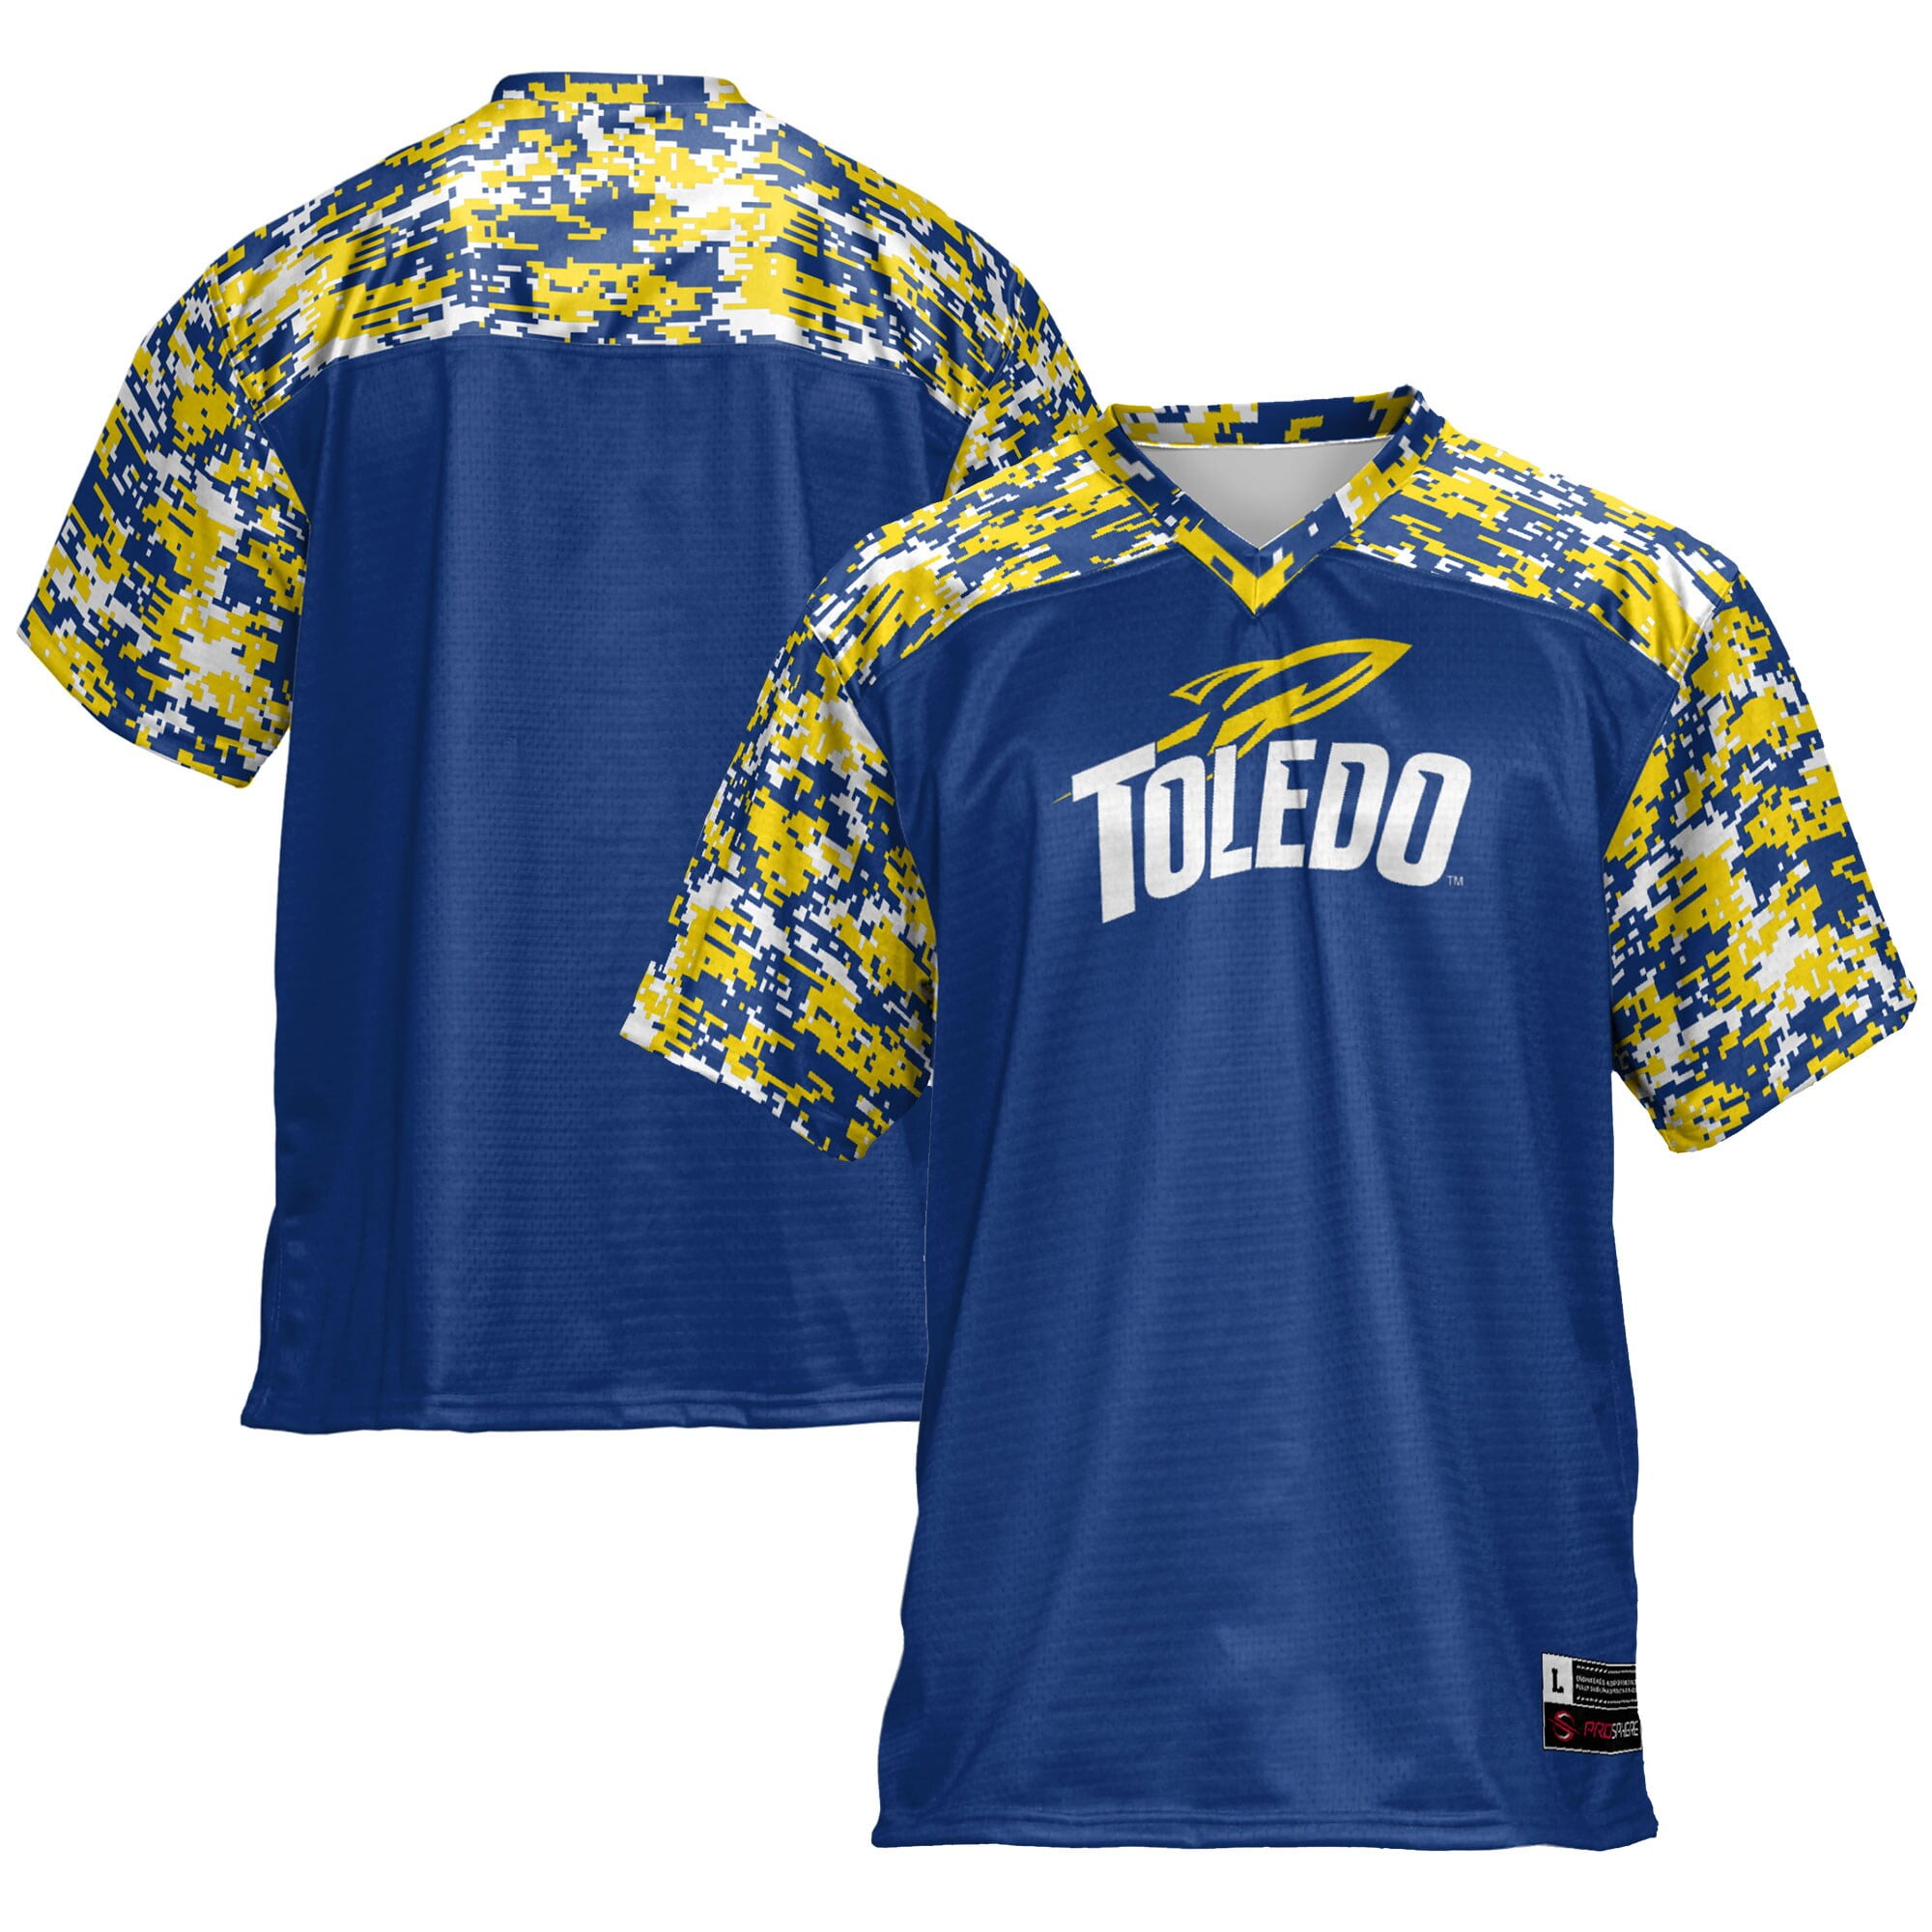 Men's Navy Toledo Rockets Football Jersey - Walmart.com